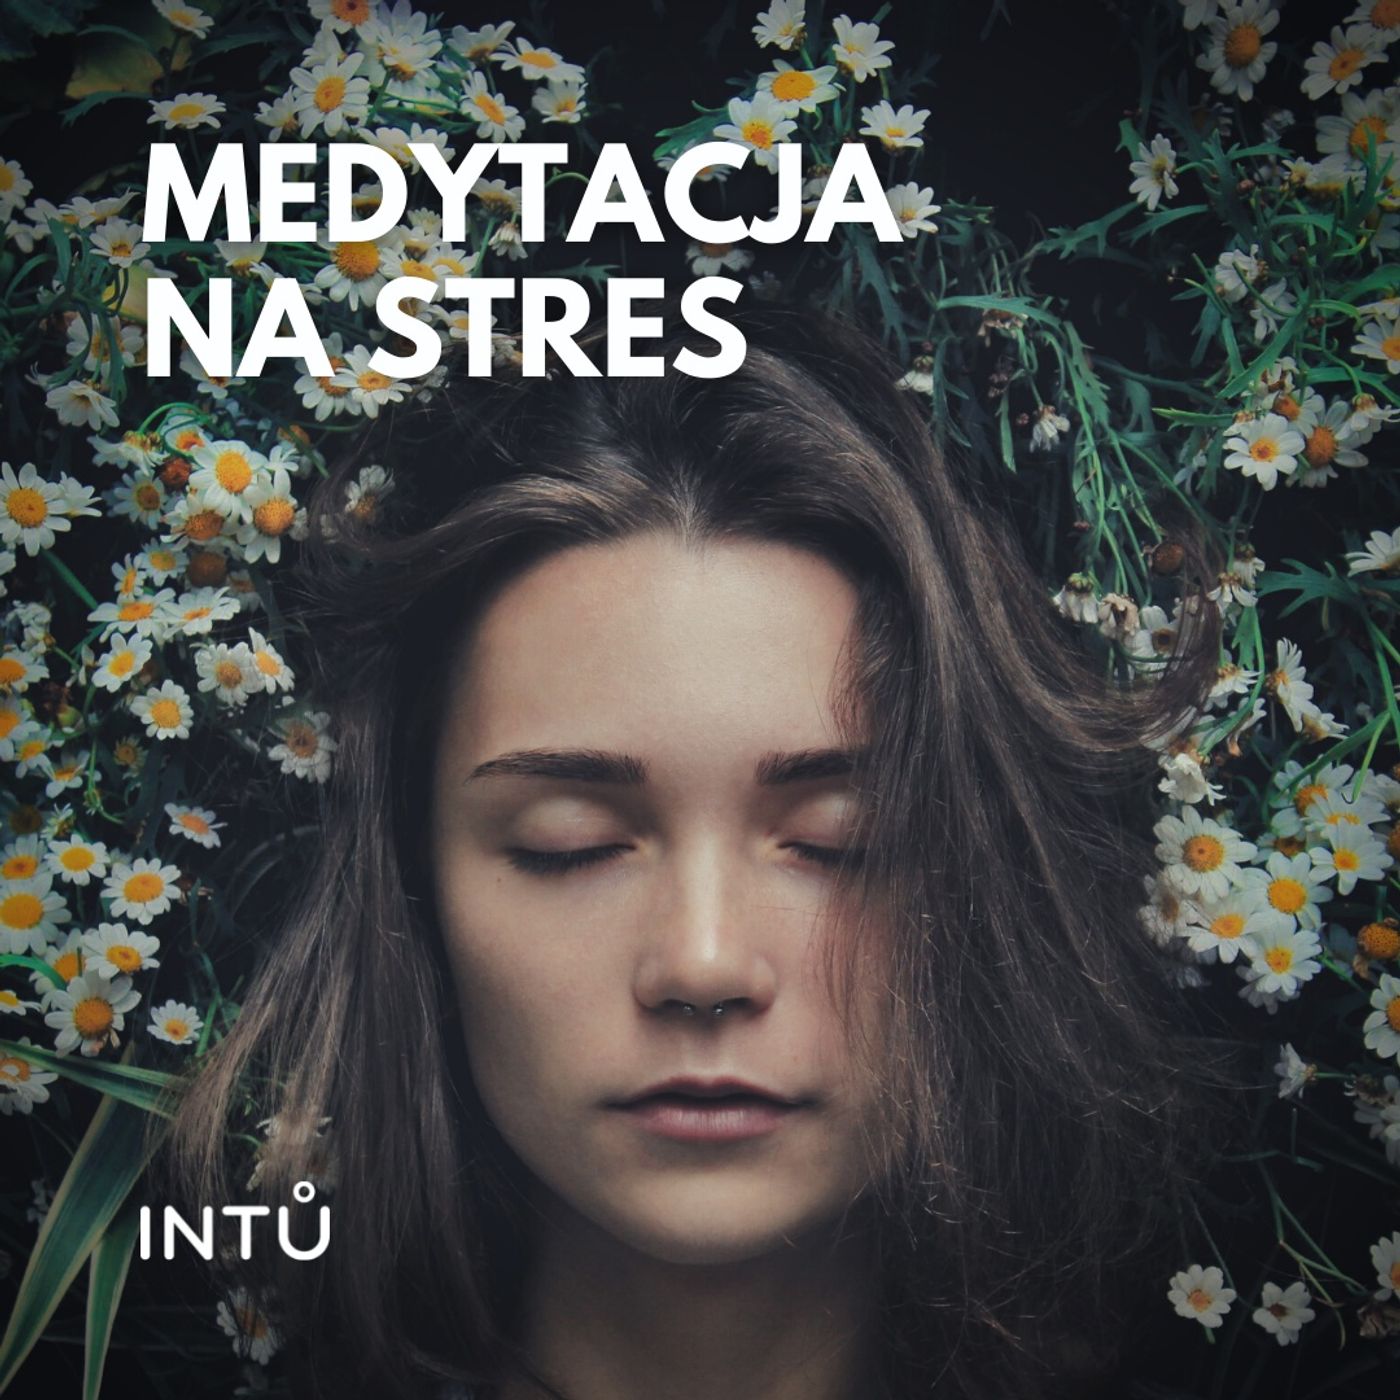 Medytacja na stres - INTU